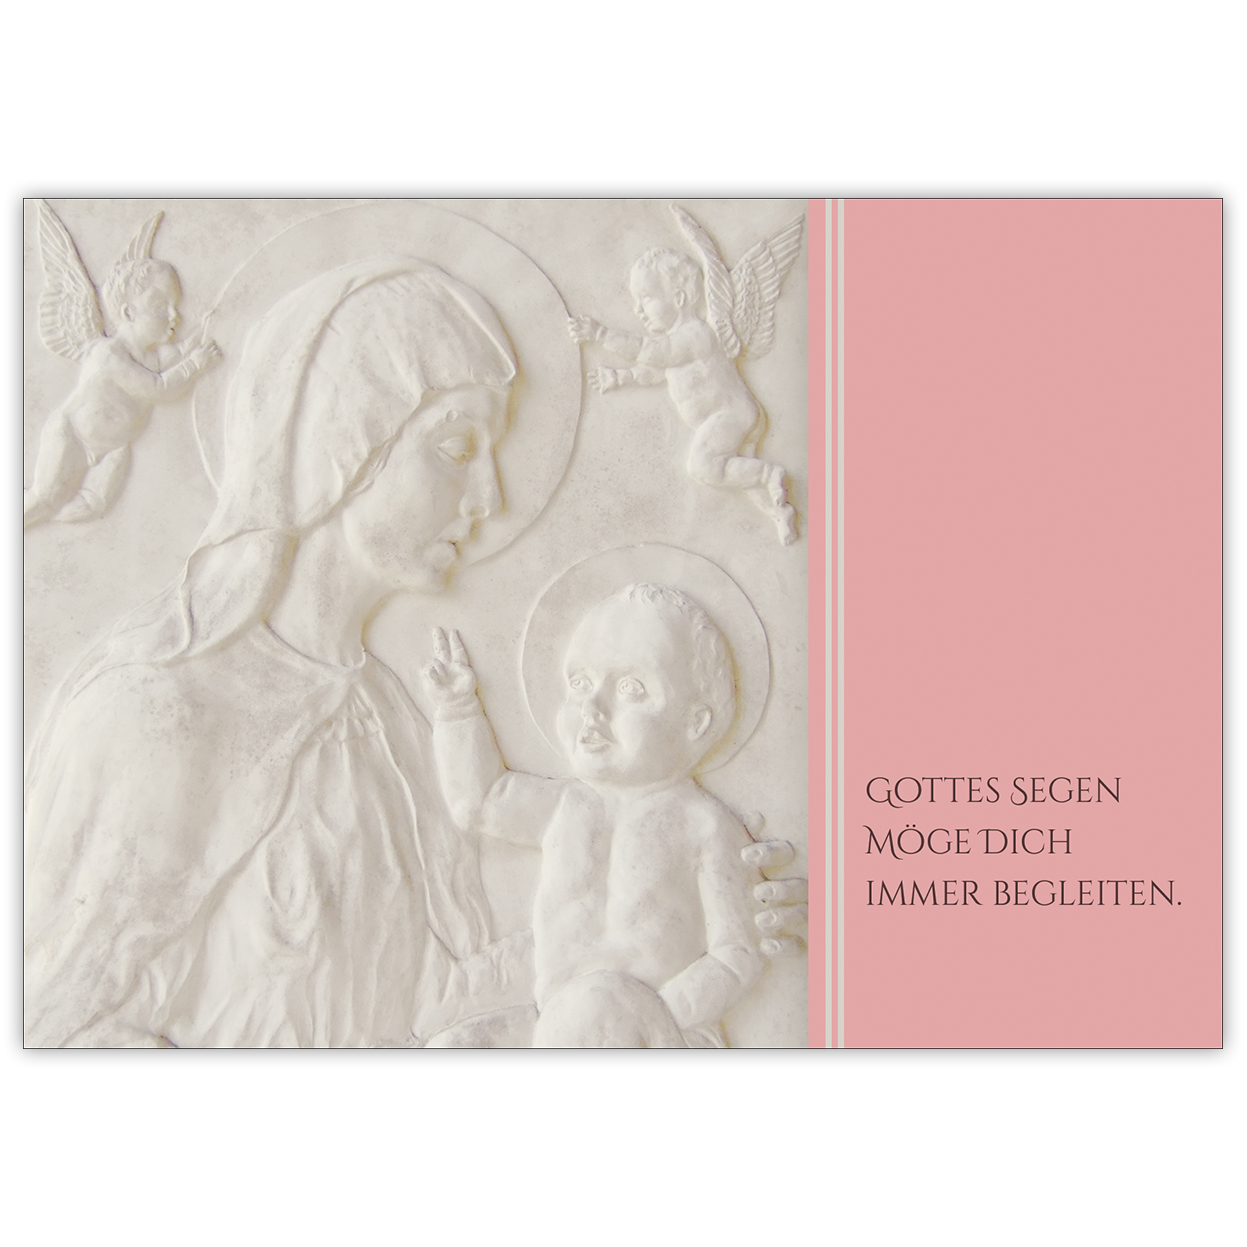 Christliche Glückwunschkarte mit Madonna und Kind in rosa: Gottes Segen möge Dich immer begleiten zur Taufe, Konfirmation oder Firmung